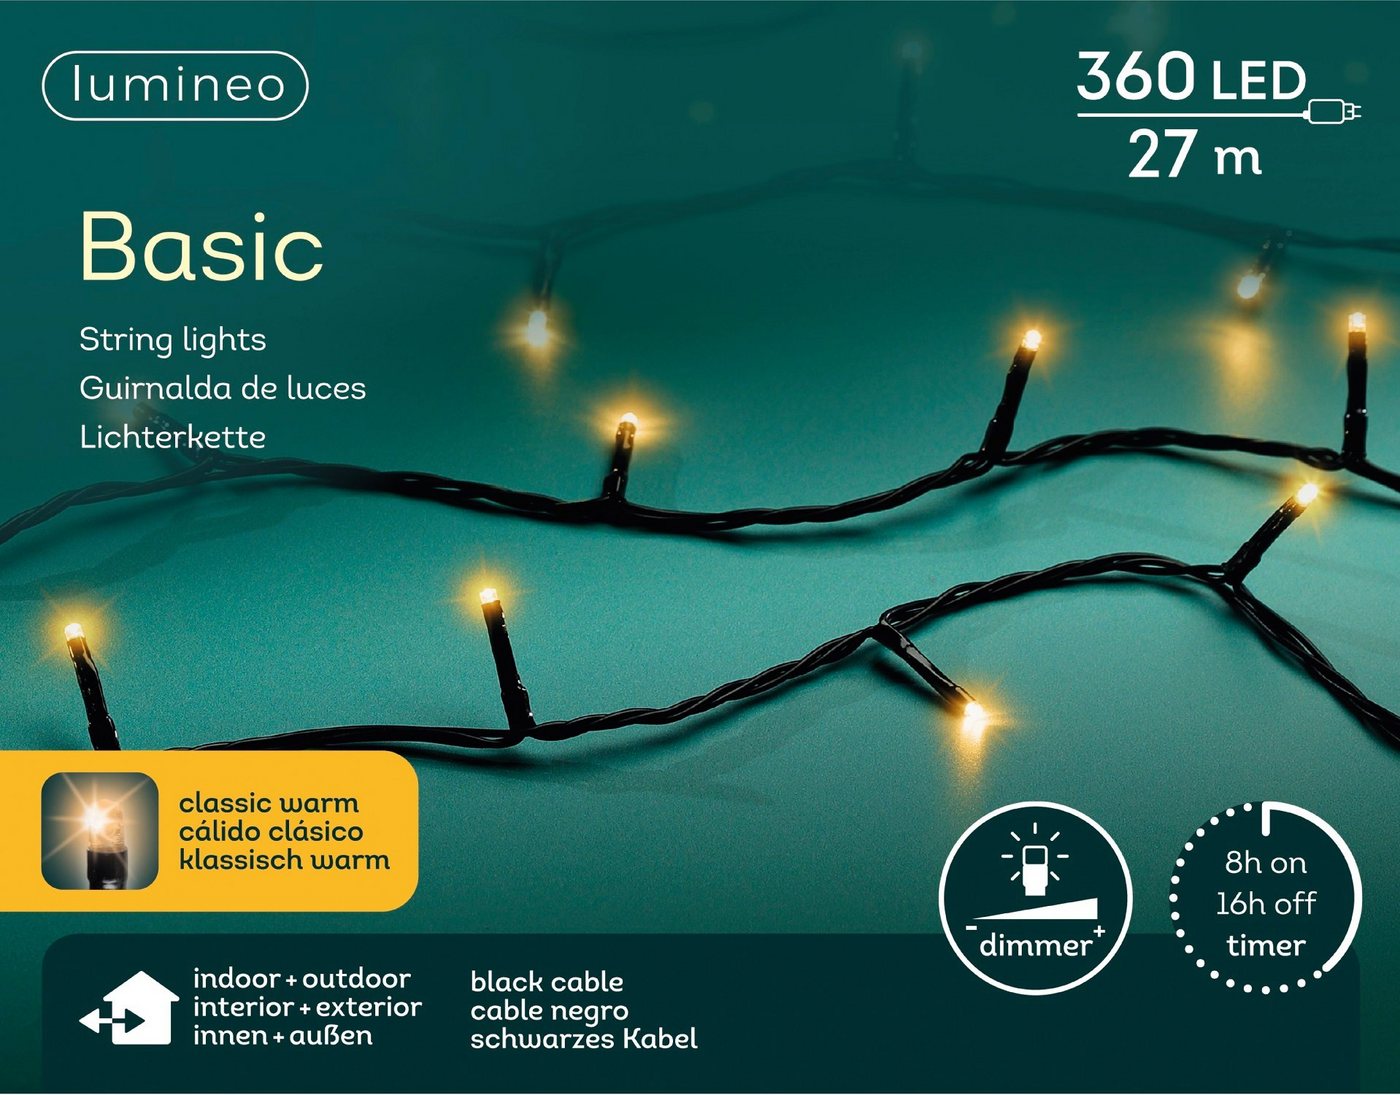 Lumineo LED-Lichterkette Lumineo Basic 360 LED 27m warm weiß, schwarzes Kabel, Timer, Dimmbar, Dimmbar, Timer, Indoor, Outdoor von Lumineo